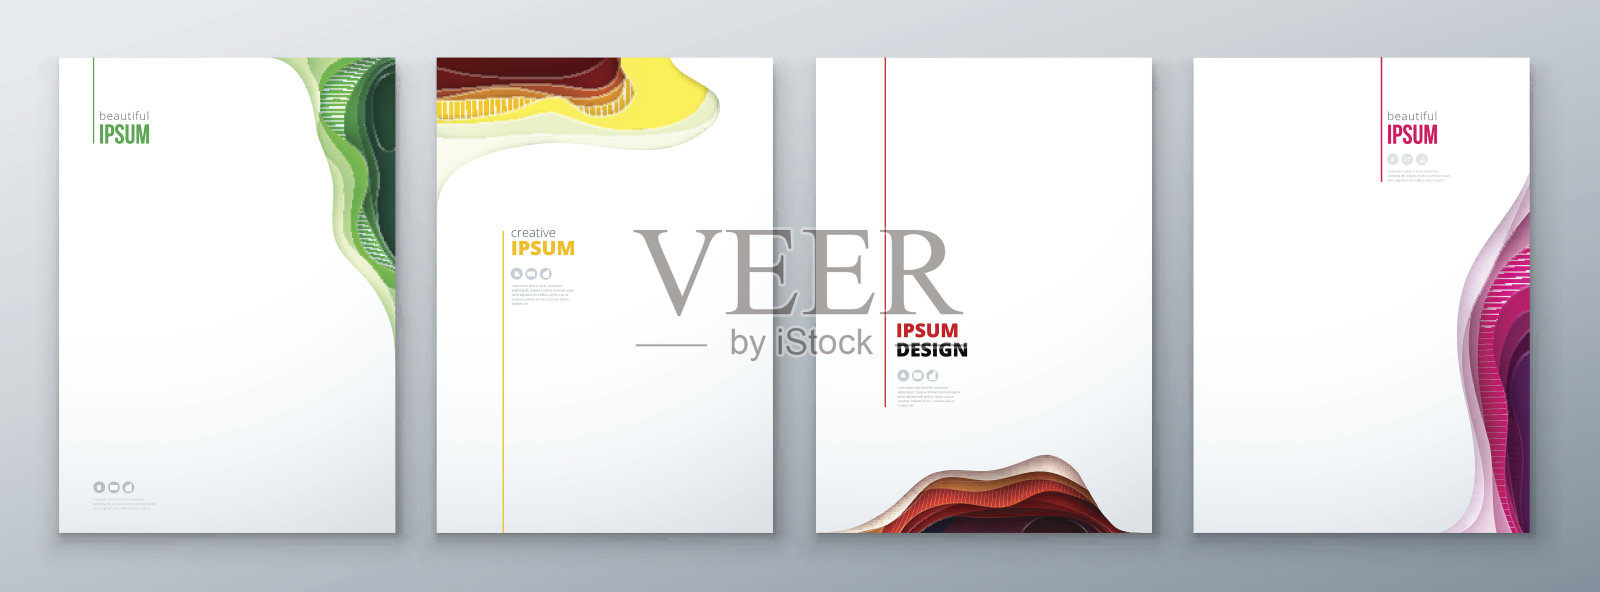 剪纸宣传册设计。纸雕刻抽象封面小册子传单杂志或目录设计。红色，橙色，黄色设计模板素材